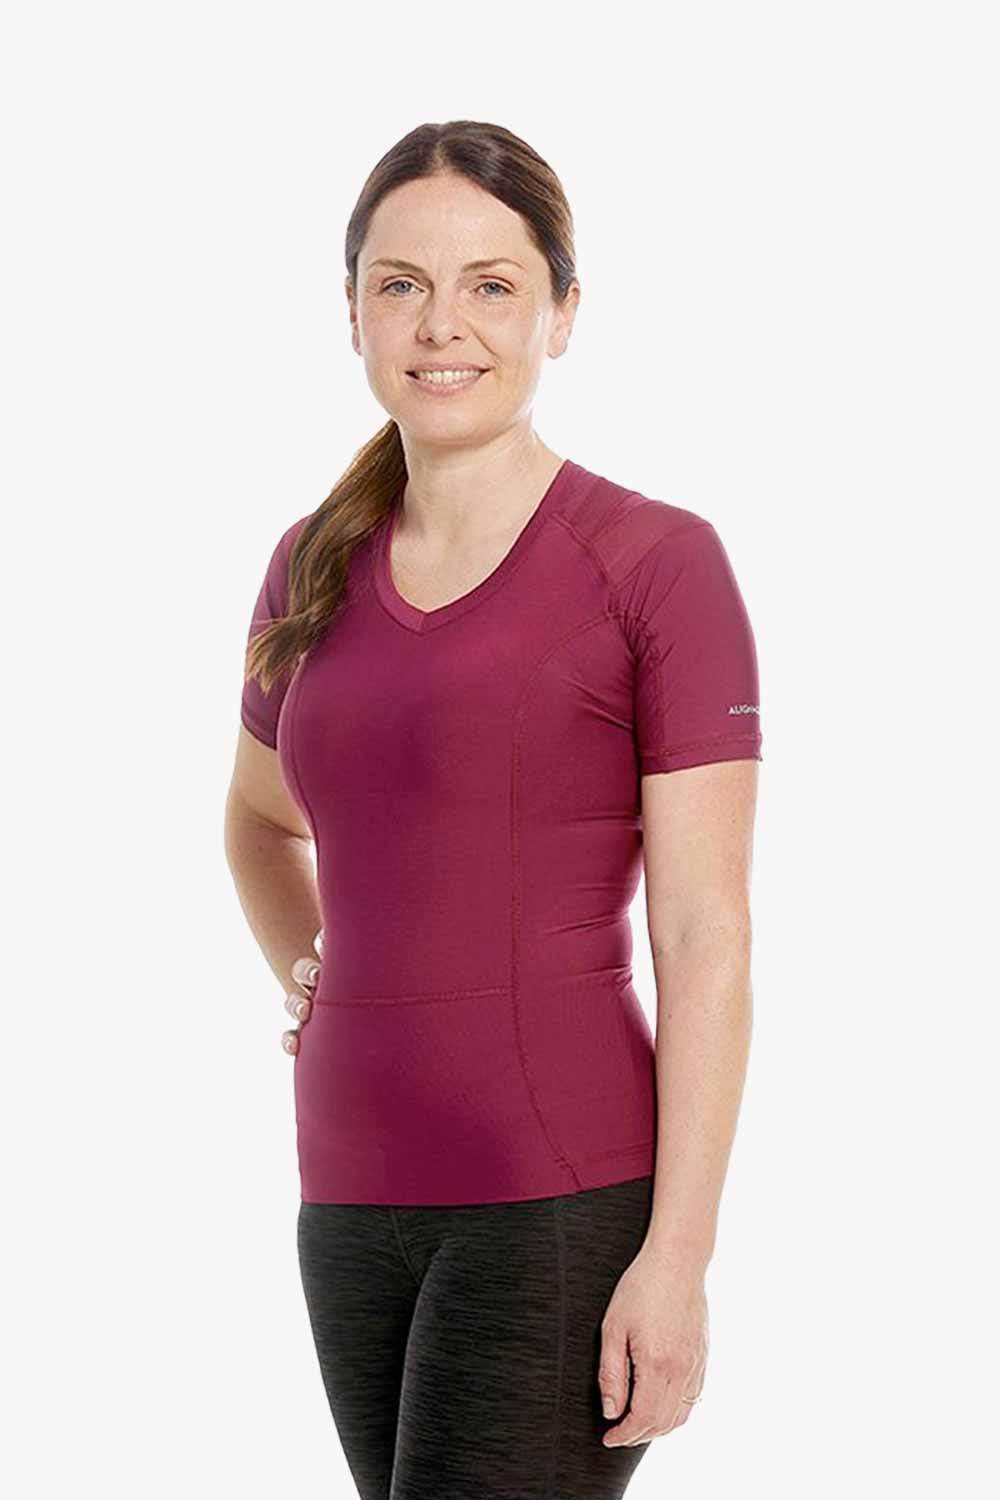 Women's Posture Shirt™ - Bordeaux